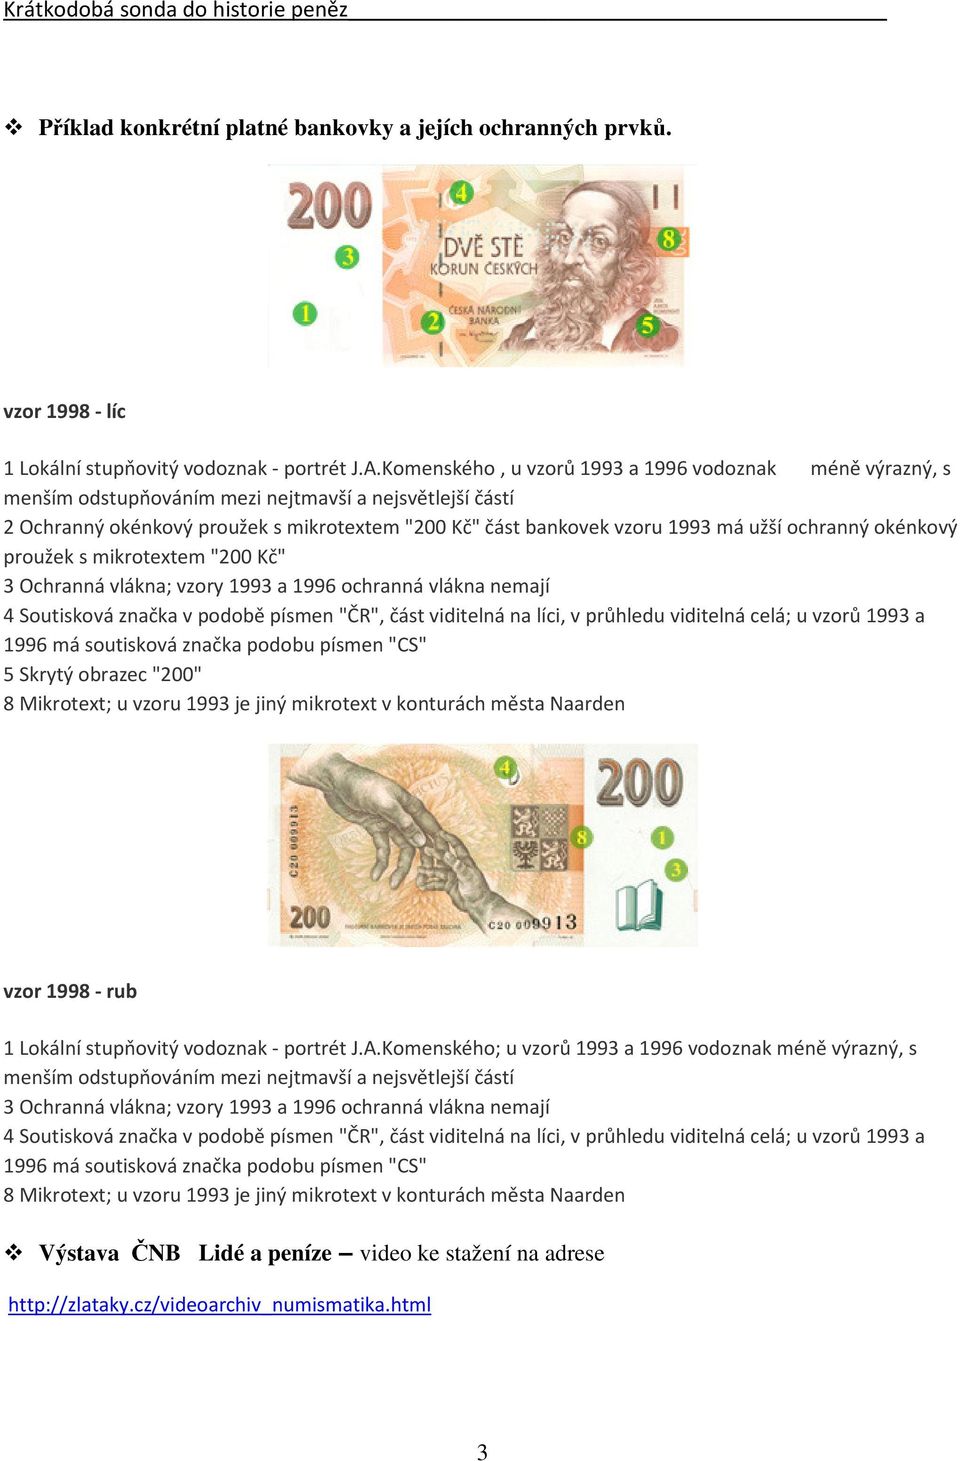 ochranný okénkový proužek s mikrotextem "200 Kč" 3 Ochranná vlákna; vzory 1993 a 1996 ochranná vlákna nemají 4 Soutisková značka v podobě písmen "ČR", část viditelná na líci, v průhledu viditelná